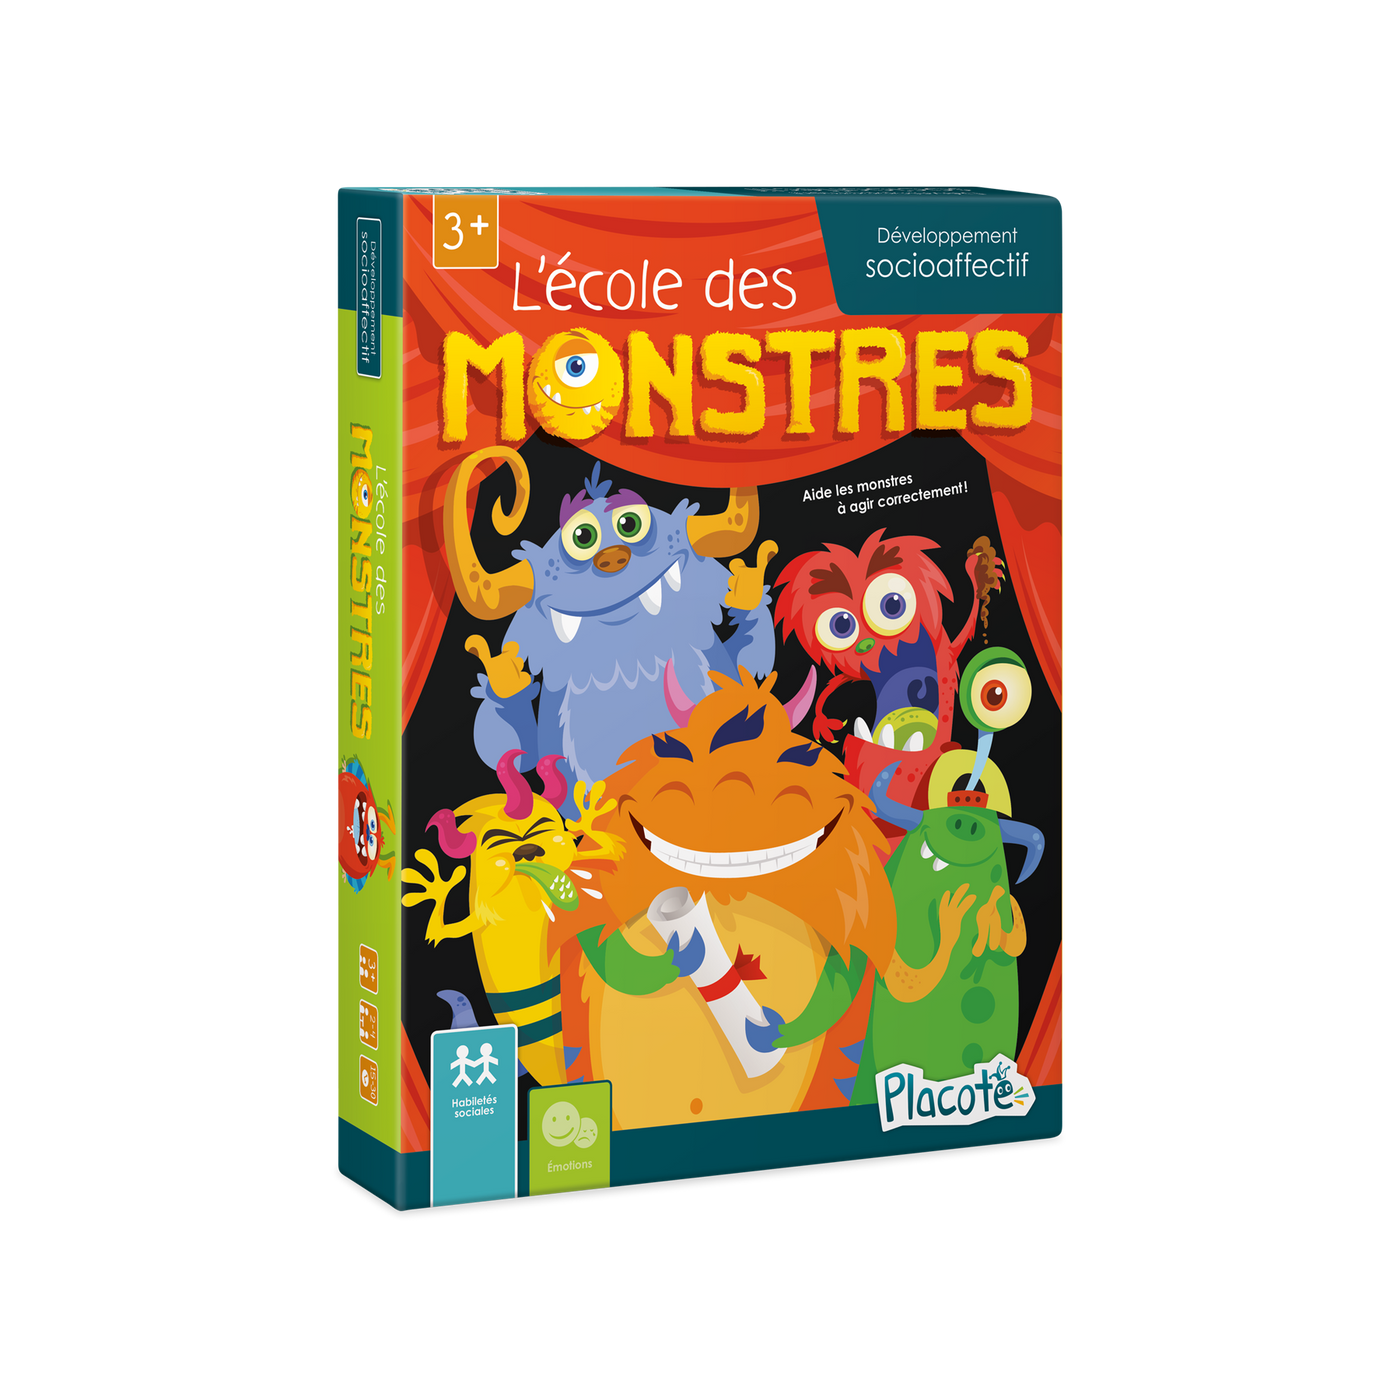 L’école des monstres - Devant de la boite du jeu, illustrant 5 monstres colorés sur une scène avec un grand rideau rouge